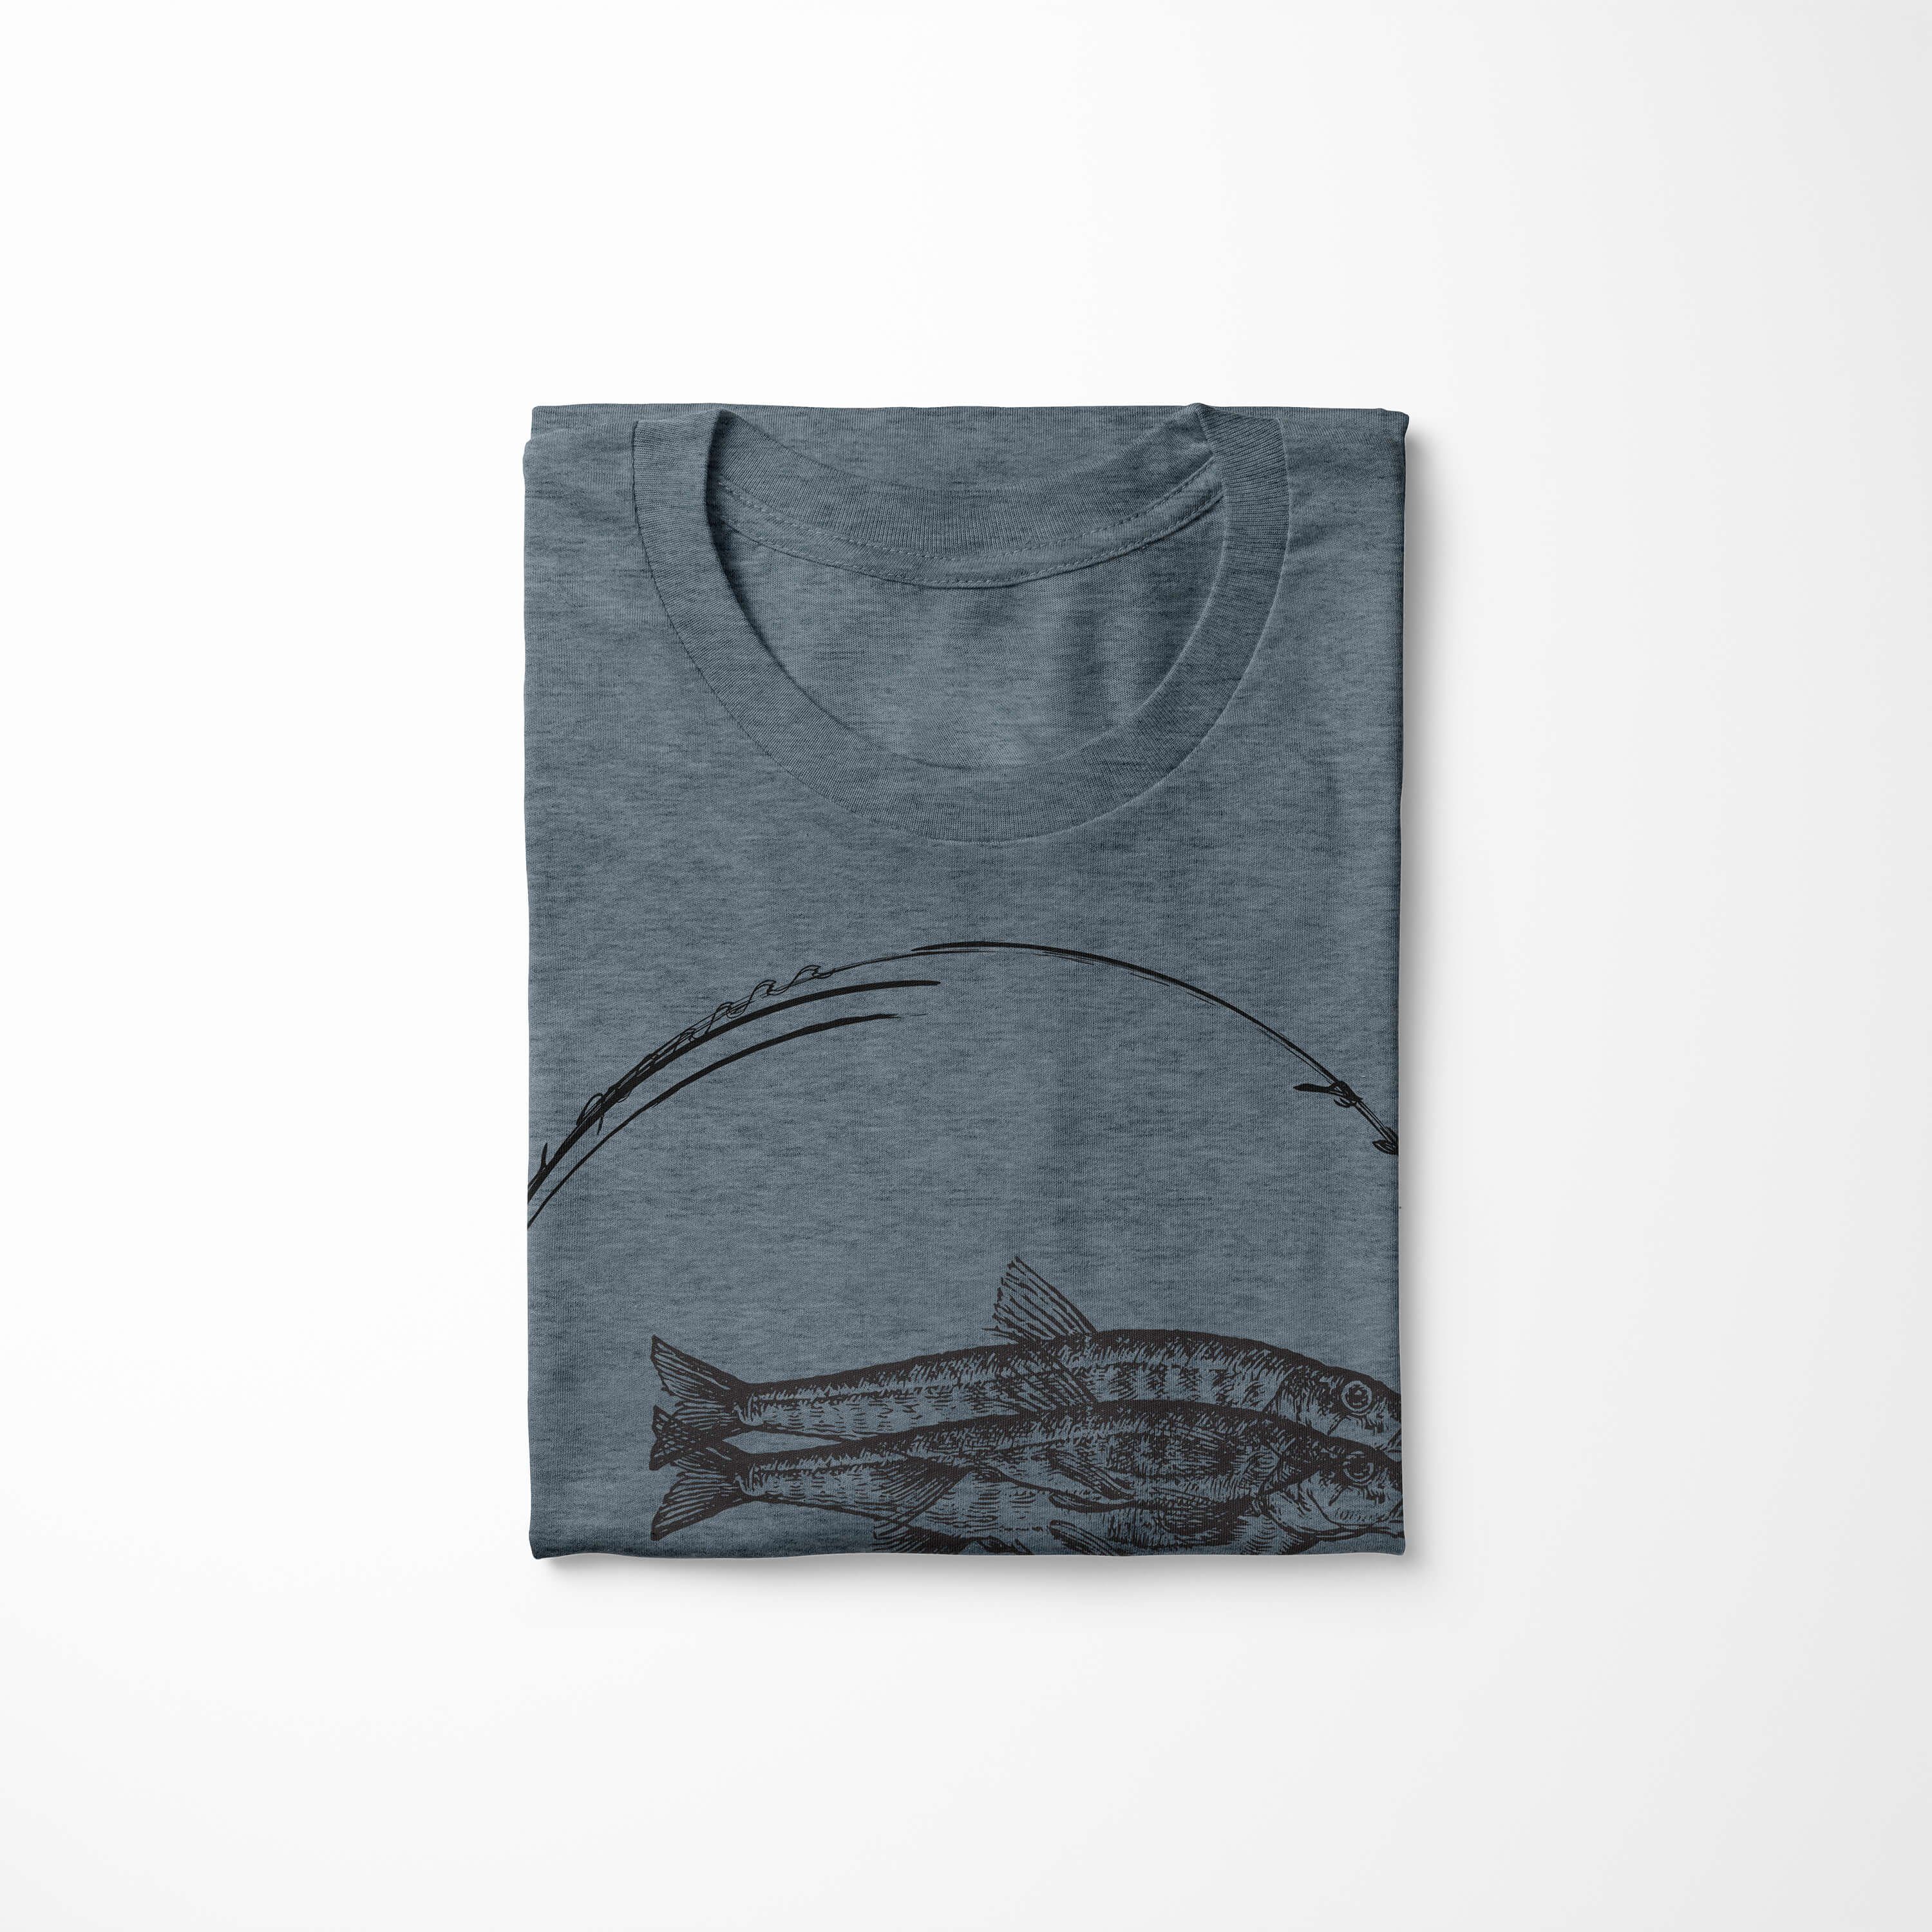 059 Art Sea und sportlicher feine Sinus T-Shirt Serie: Creatures, / Fische Tiefsee T-Shirt - Indigo Sea Struktur Schnitt